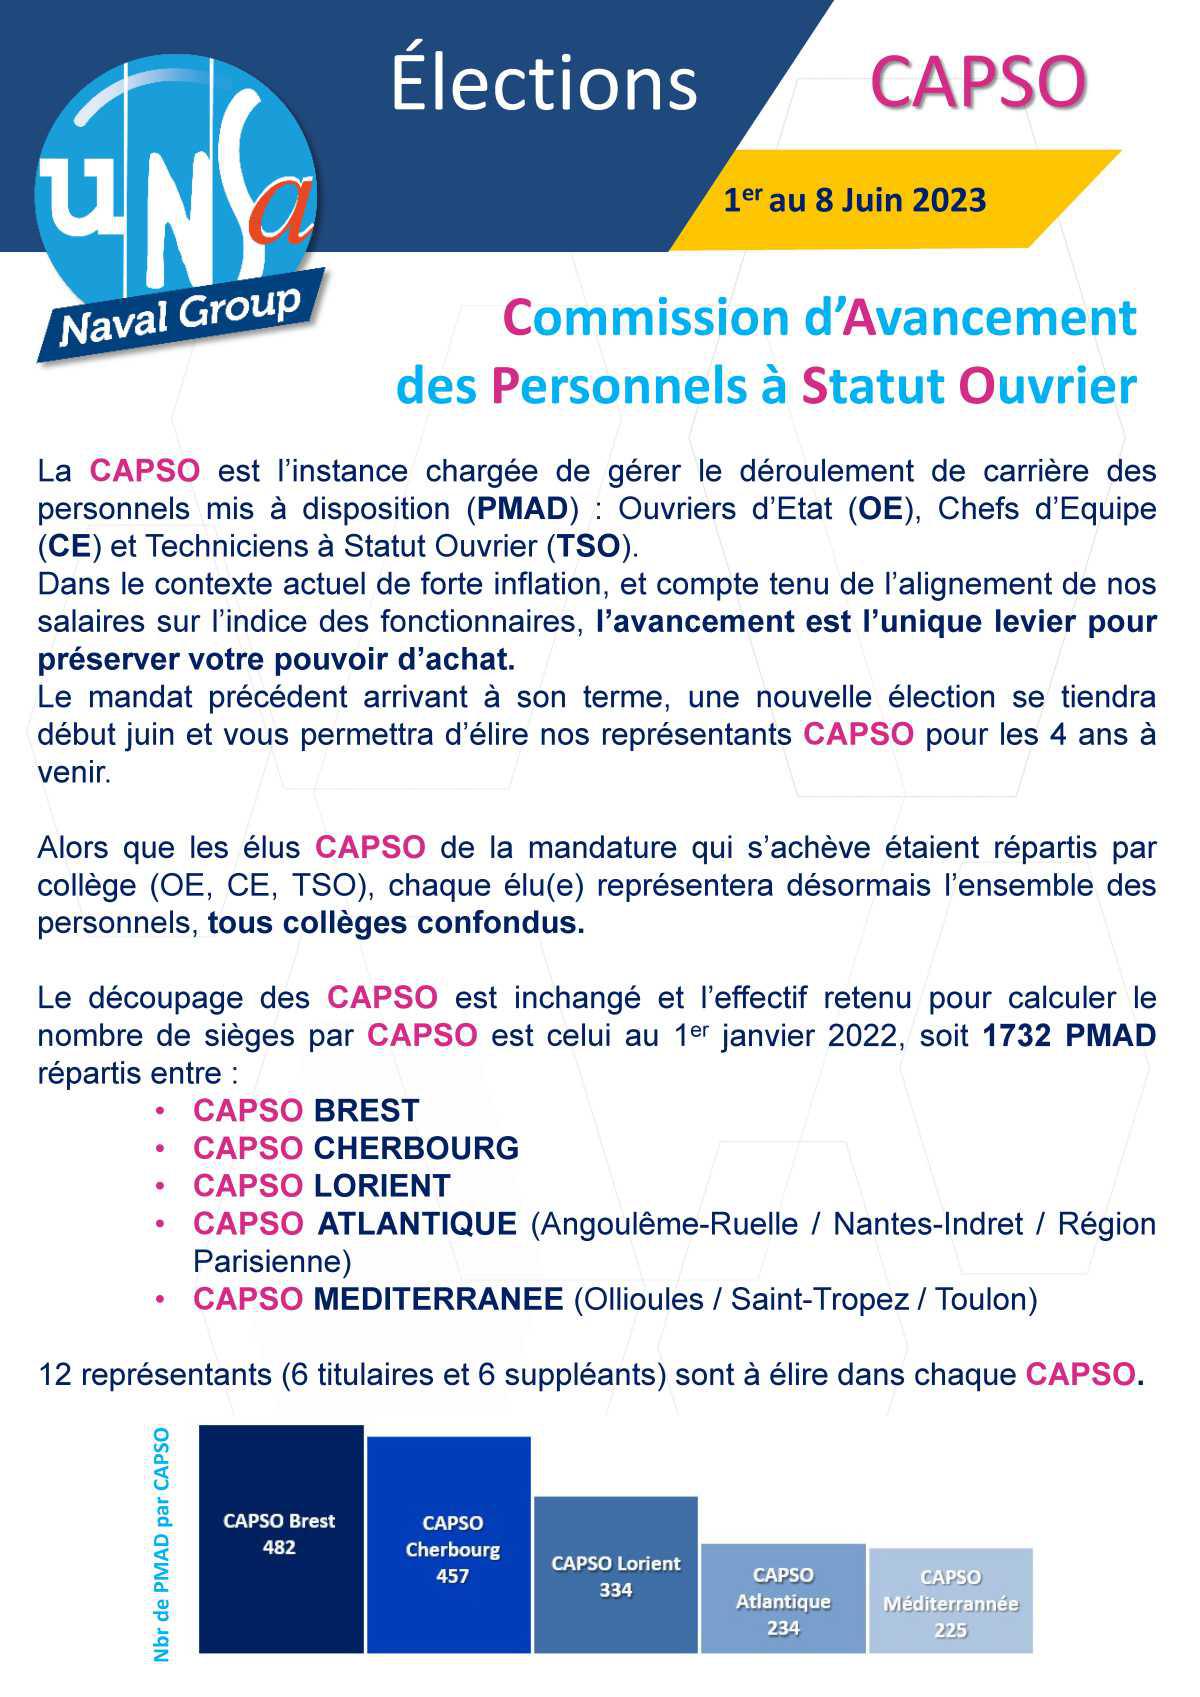 Elections CAPSO Cherbourg - du 1er au 8 juin 2023